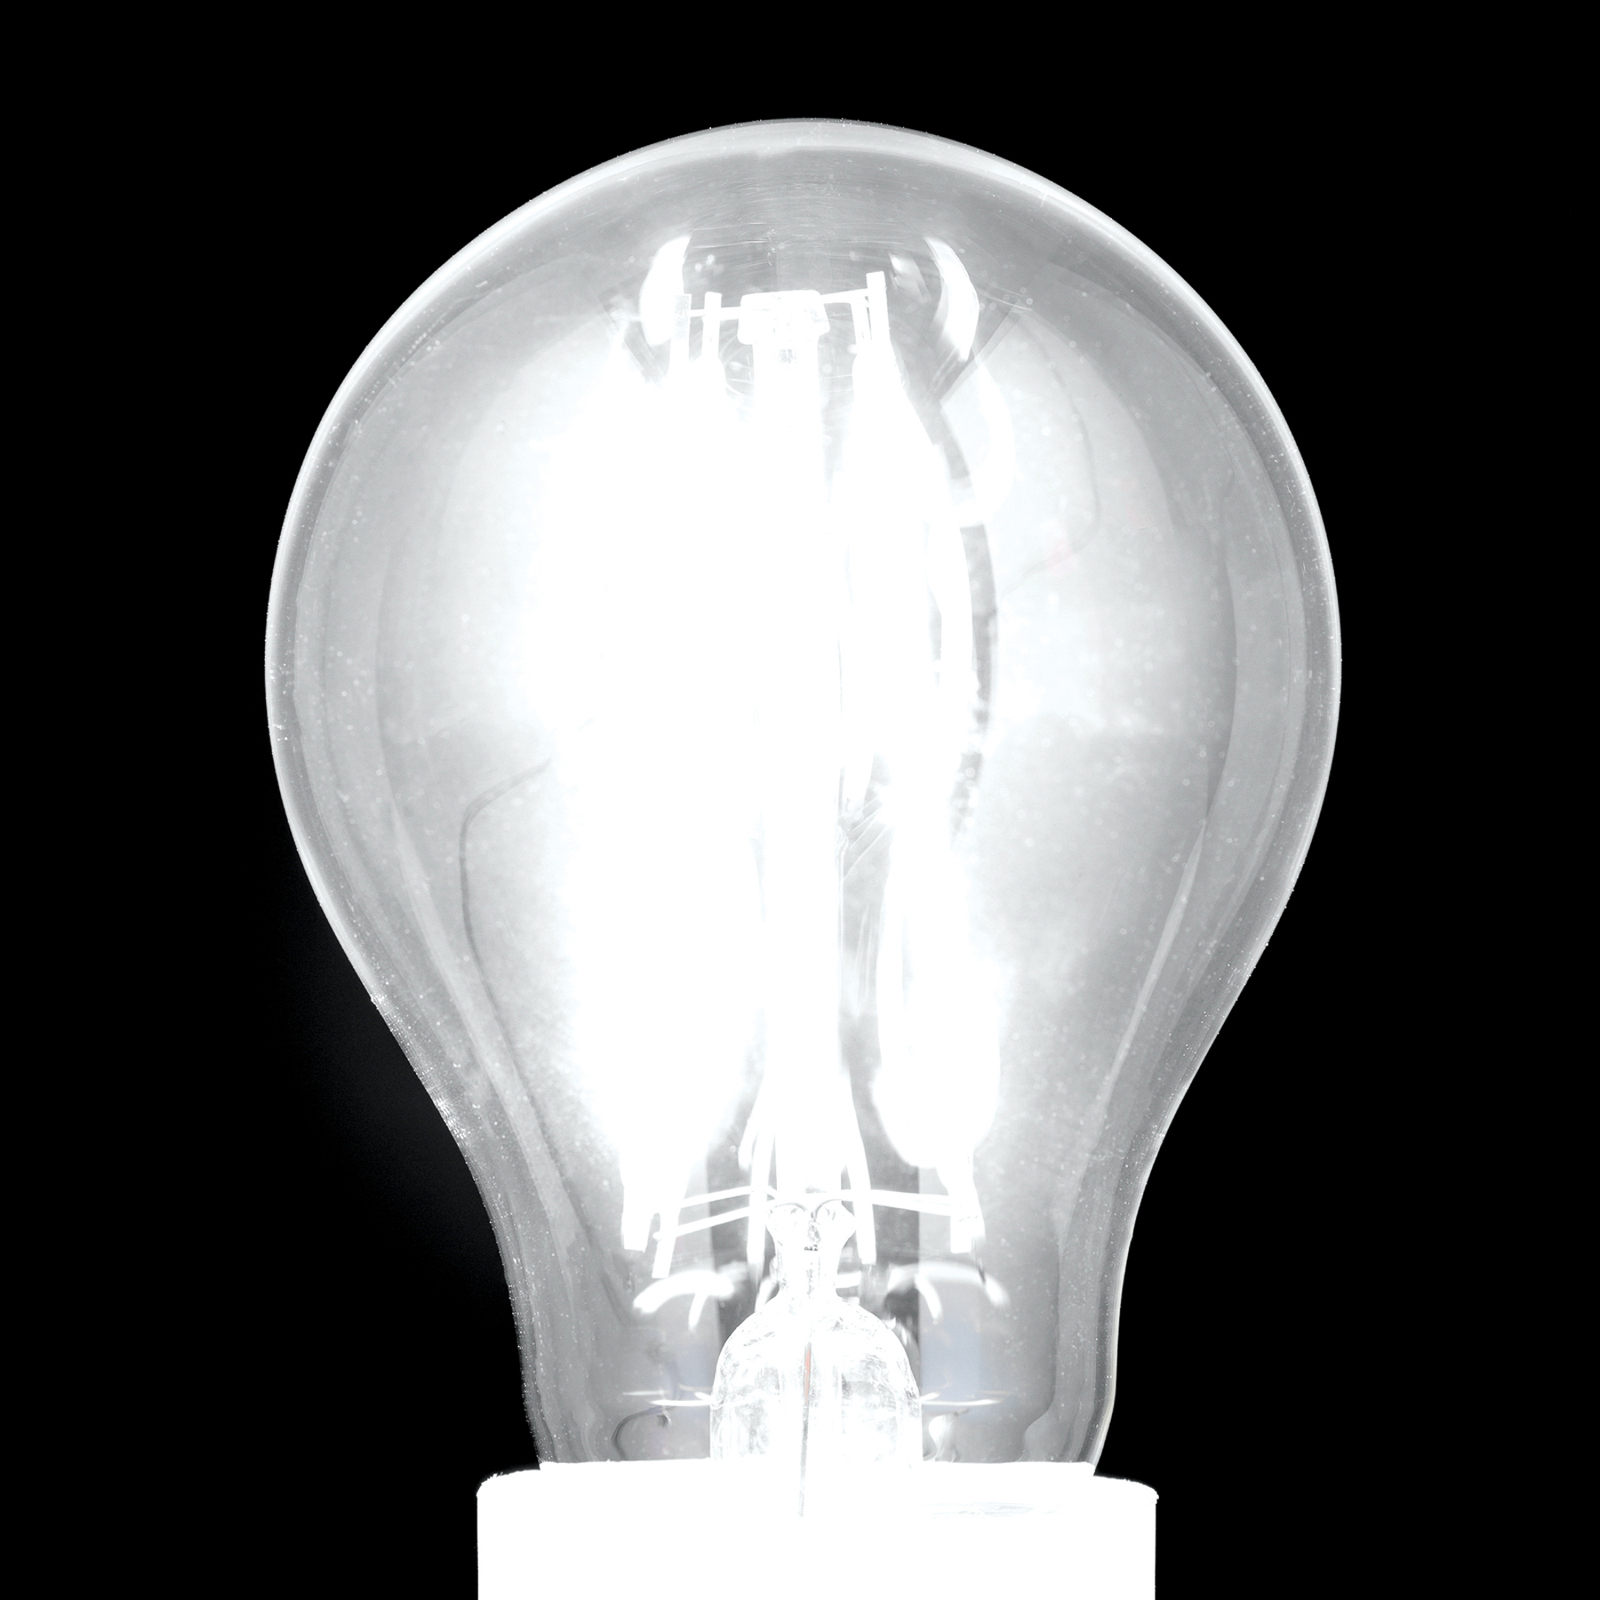 Ampoule LED filament E27 A60 claire 15W 827 2000lm à intensité variable